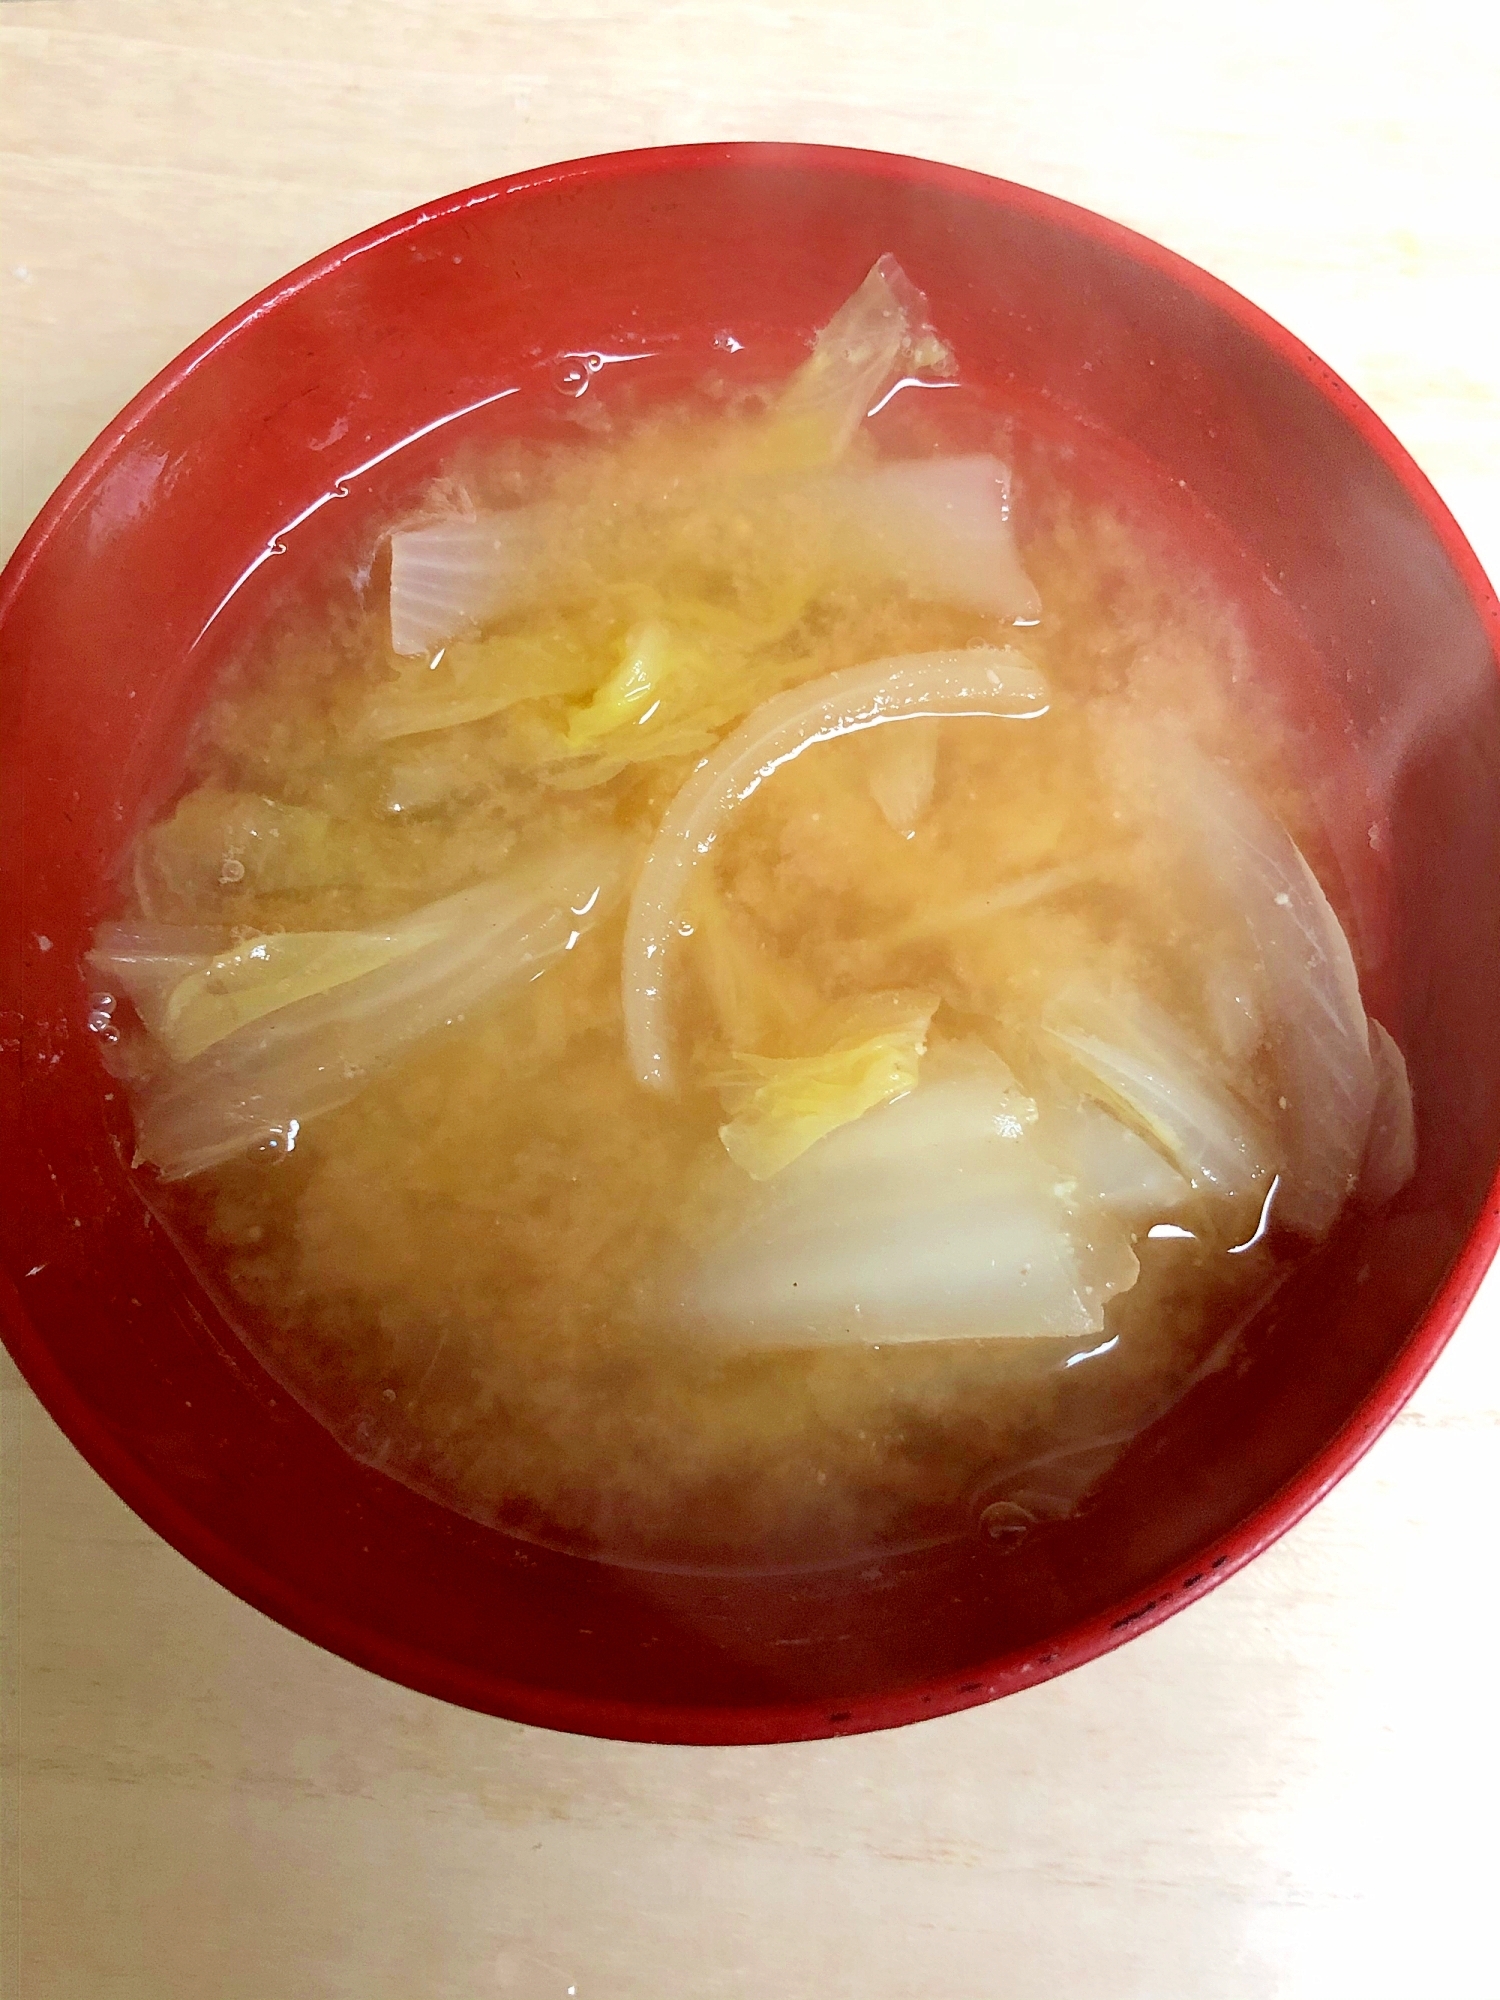 白菜と大根のケチャップ風味の味噌汁